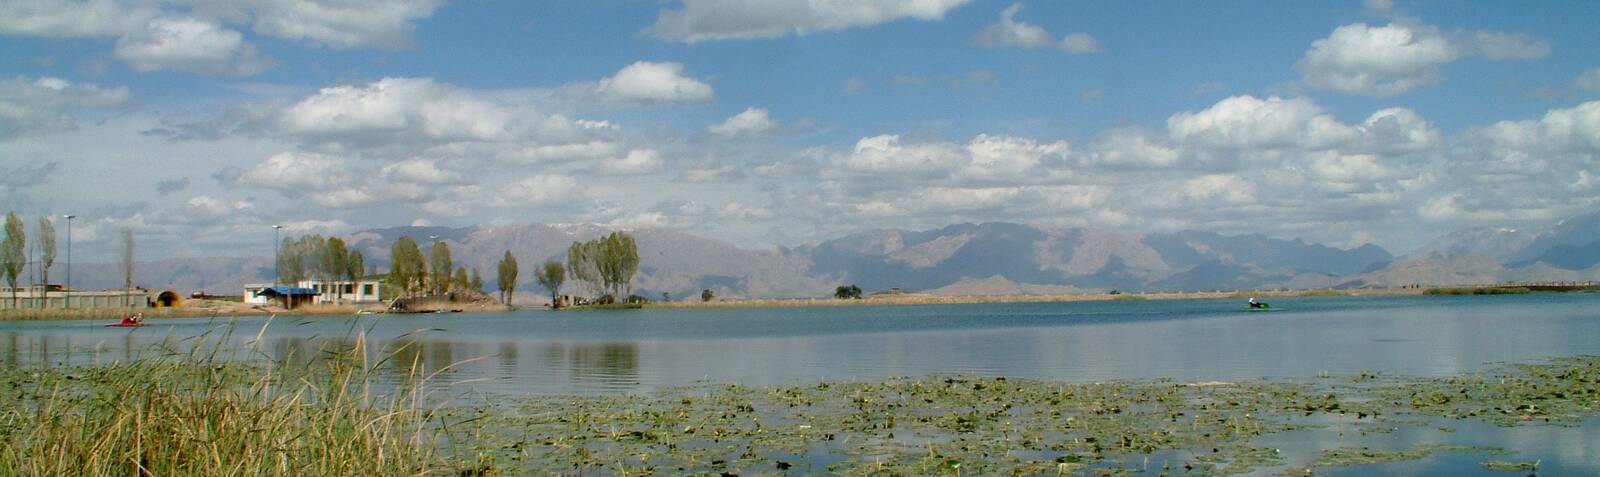 Nilufar Lake (Sarab-e Nilufar) 